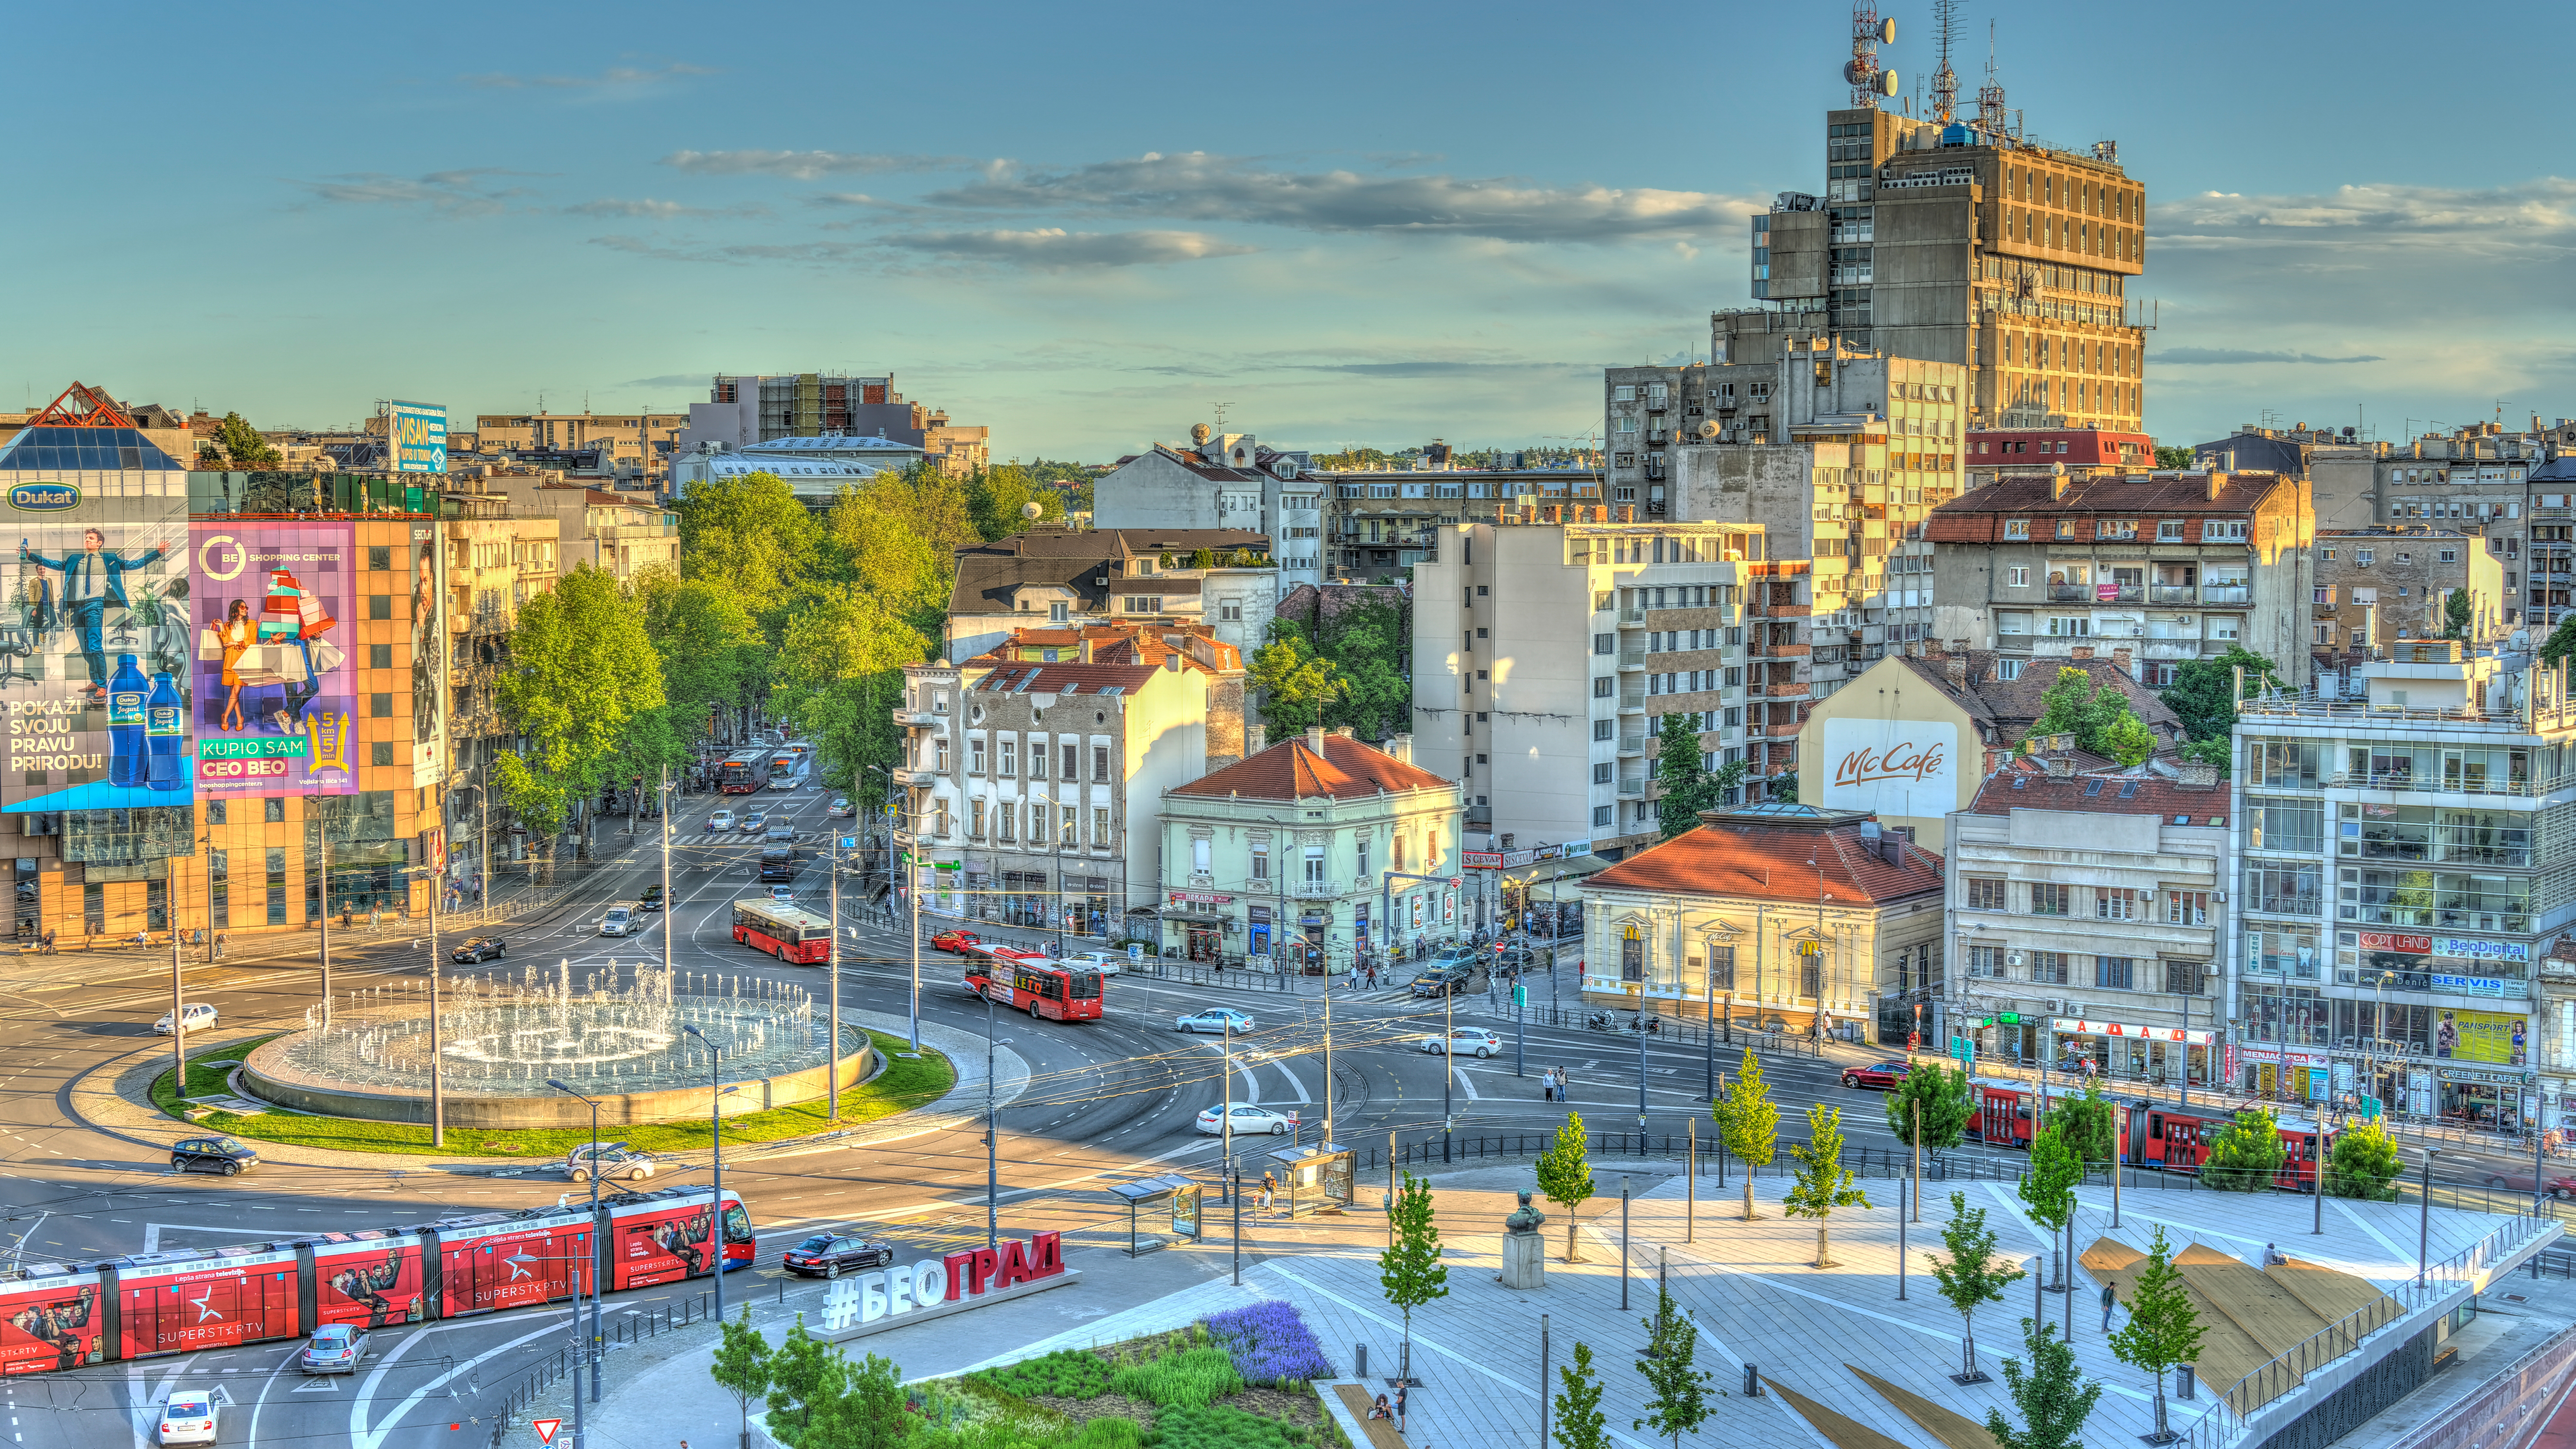 Центральная площадь Белграда как символ программы иммиграции в Сербию через недвижимость